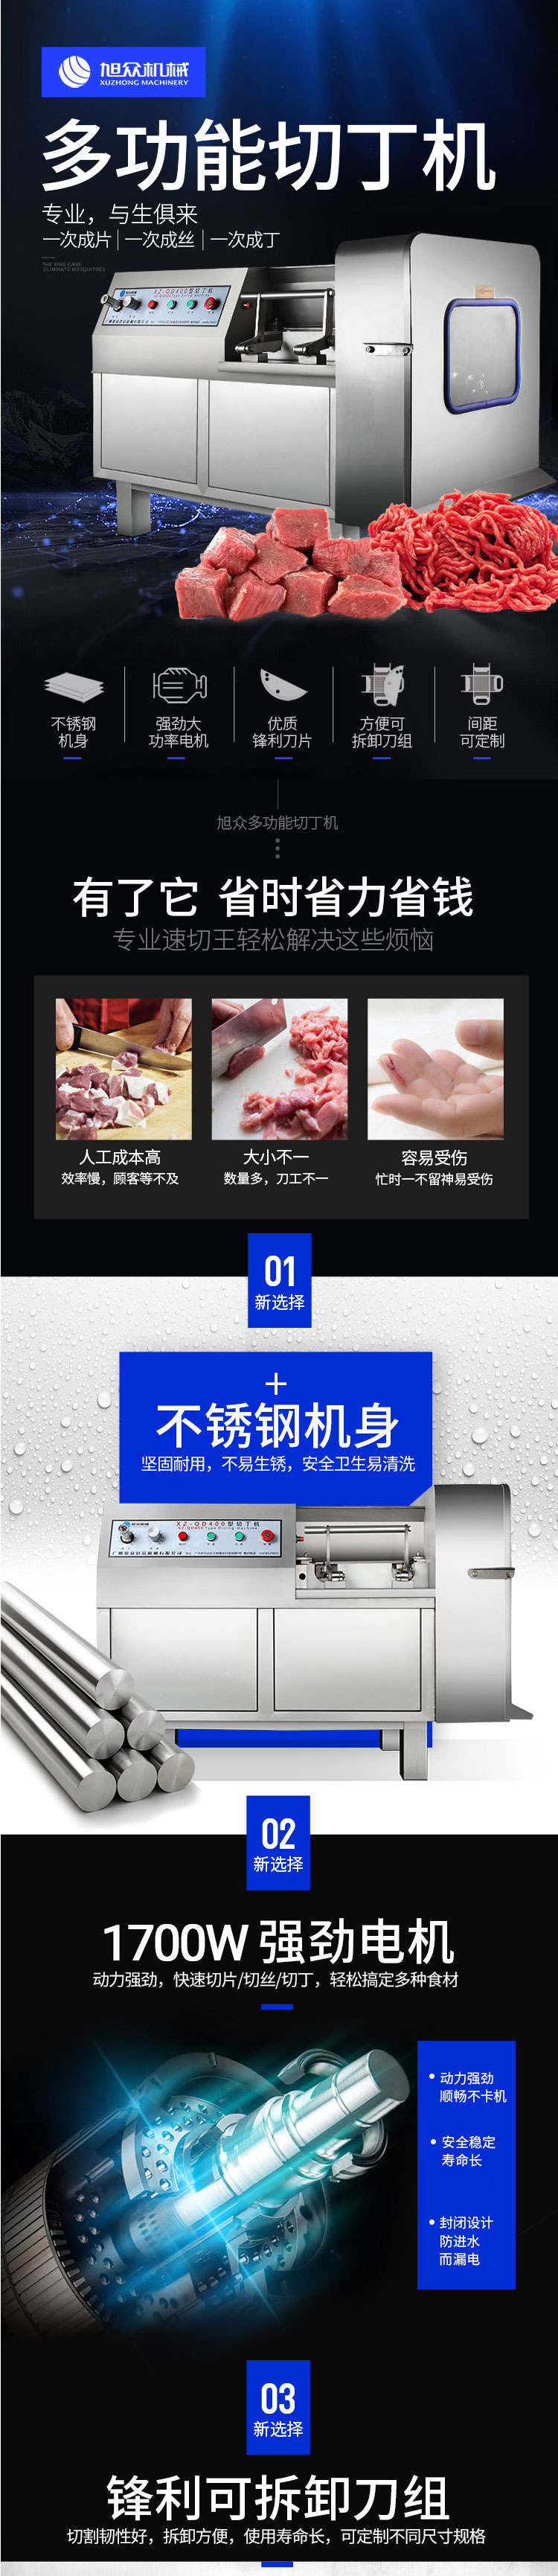 XZ-QD系列切丁机-杭州赛旭食品机械有限公司_01.jpg